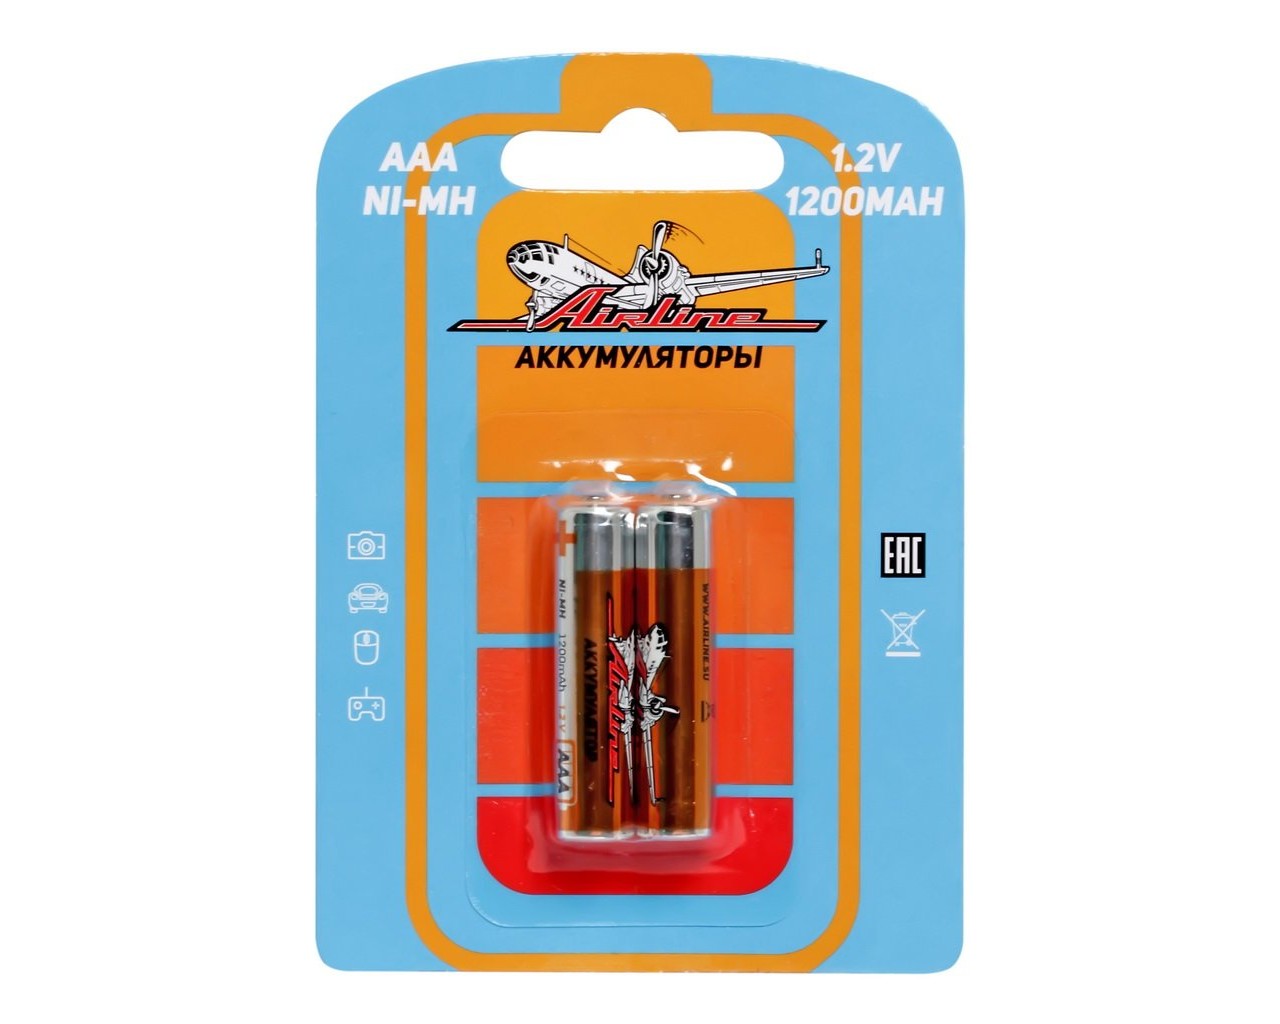 Батарейка AAA HR03 аккумулятор Ni-Mh 1200 mAh (AIRLINE) (к-т 2шт)